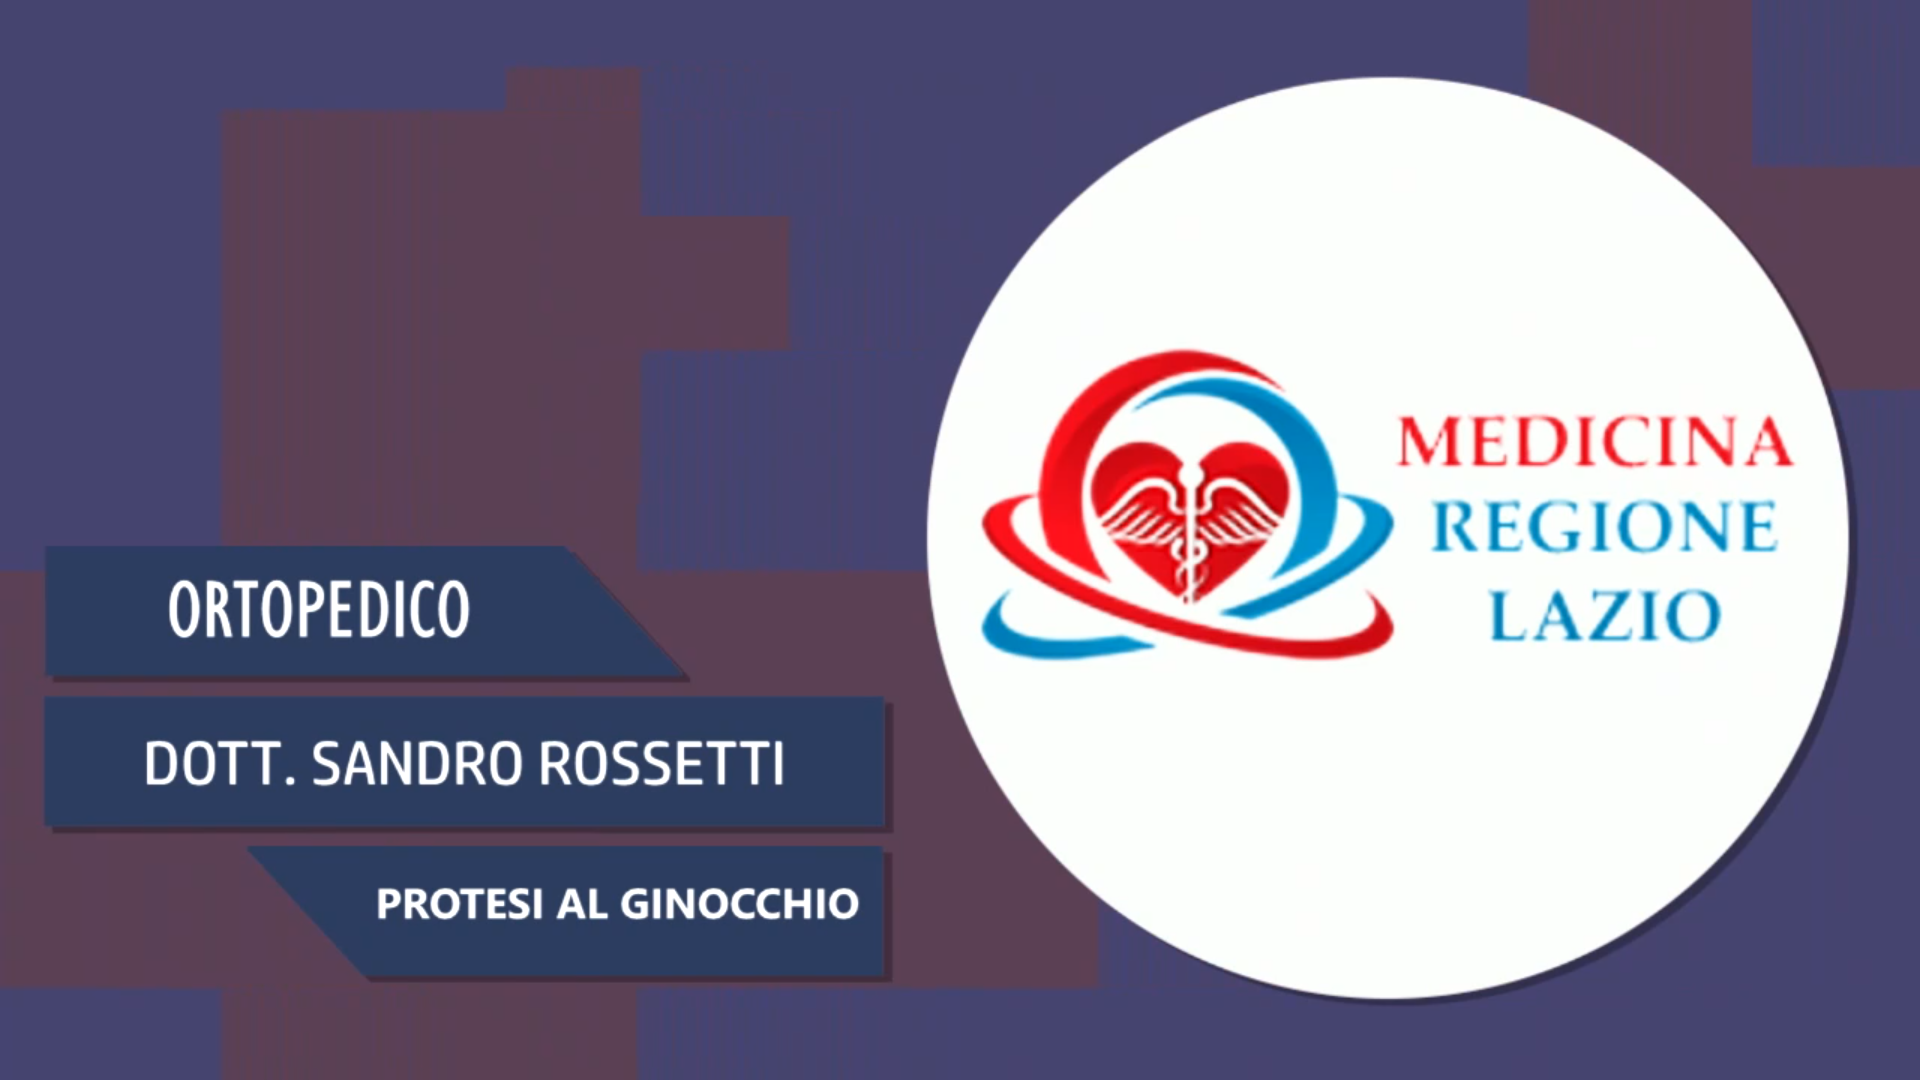 Intervista al Dott. Sandro Rossetti – Protesi al ginocchio